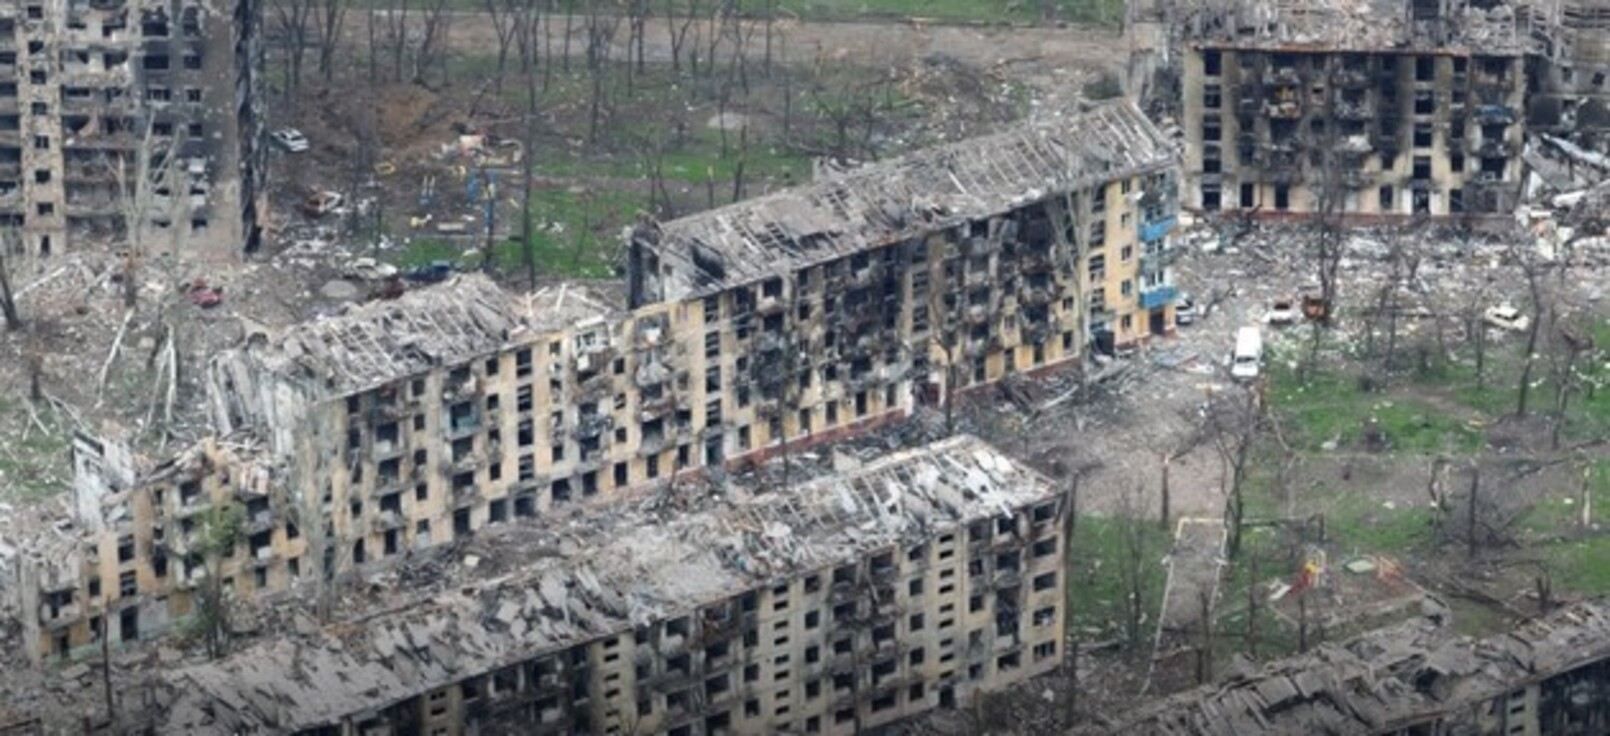  800 тисяч українців втратили житло через війну - яке відшкодування